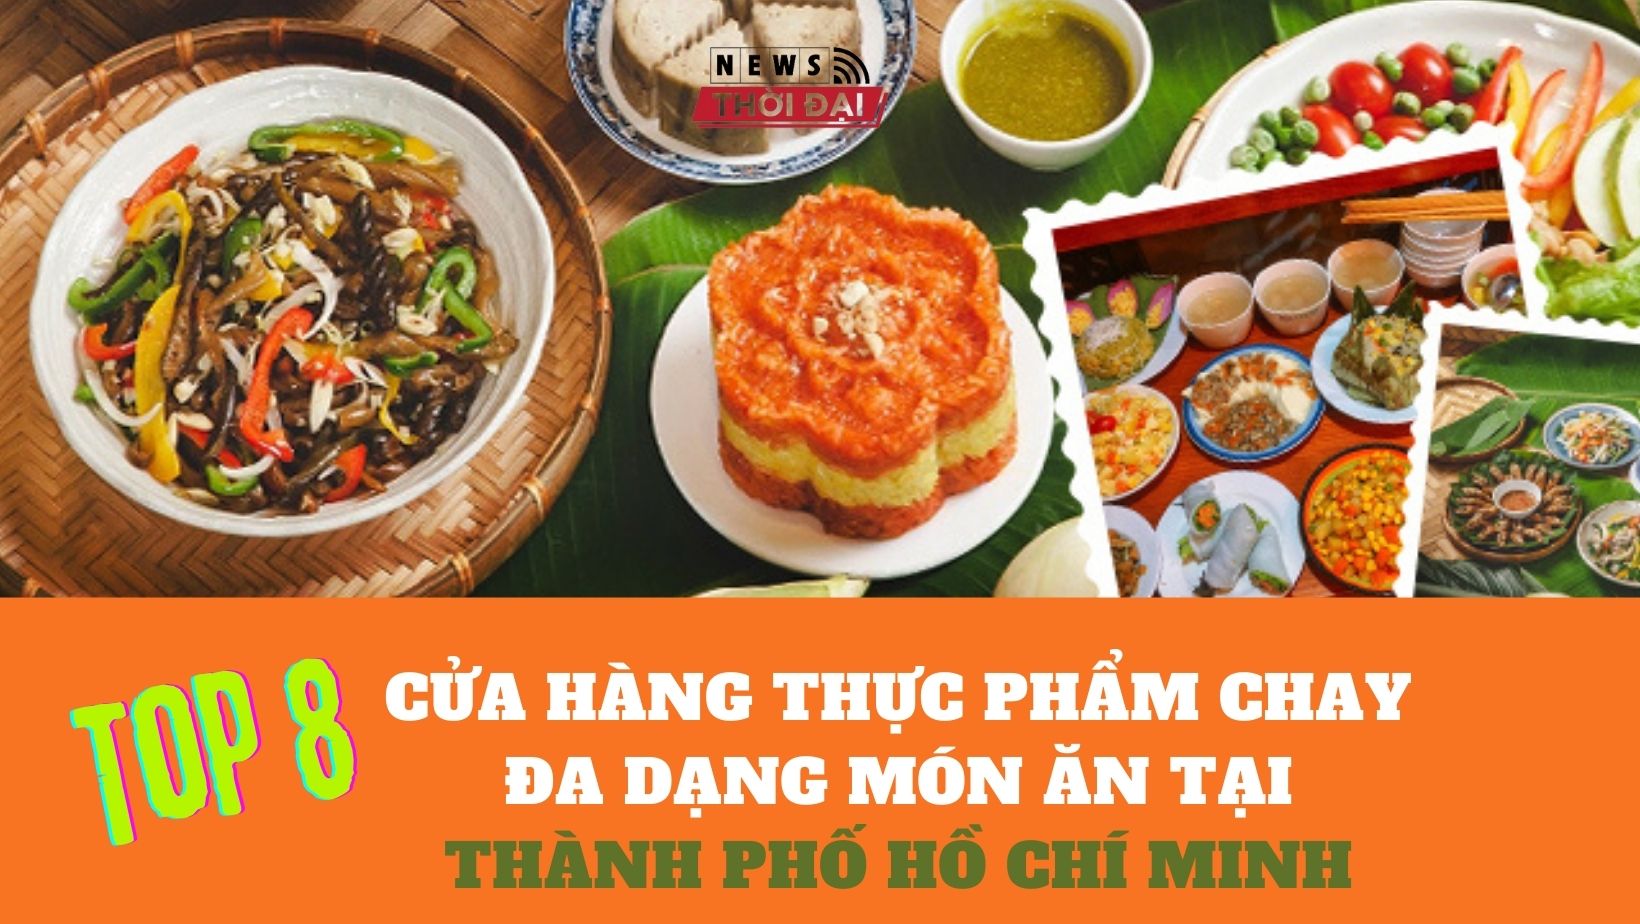 Top 8 Cửa hàng thực phẩm chay đa dạng món ăn tại Thành phố Hồ Chí Minh